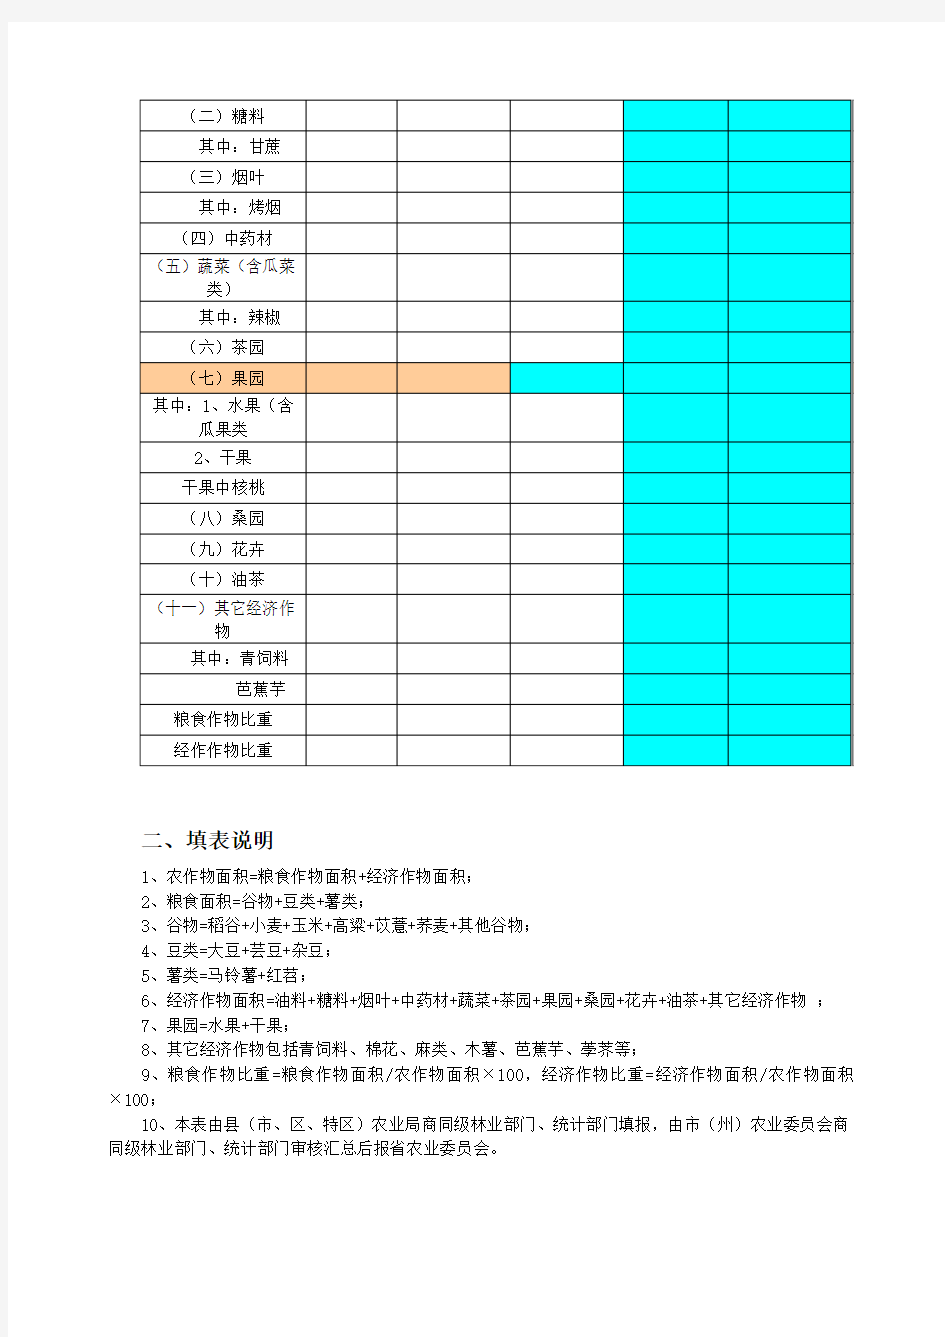 贵州省粮经比统计监测报表及主要指标解释